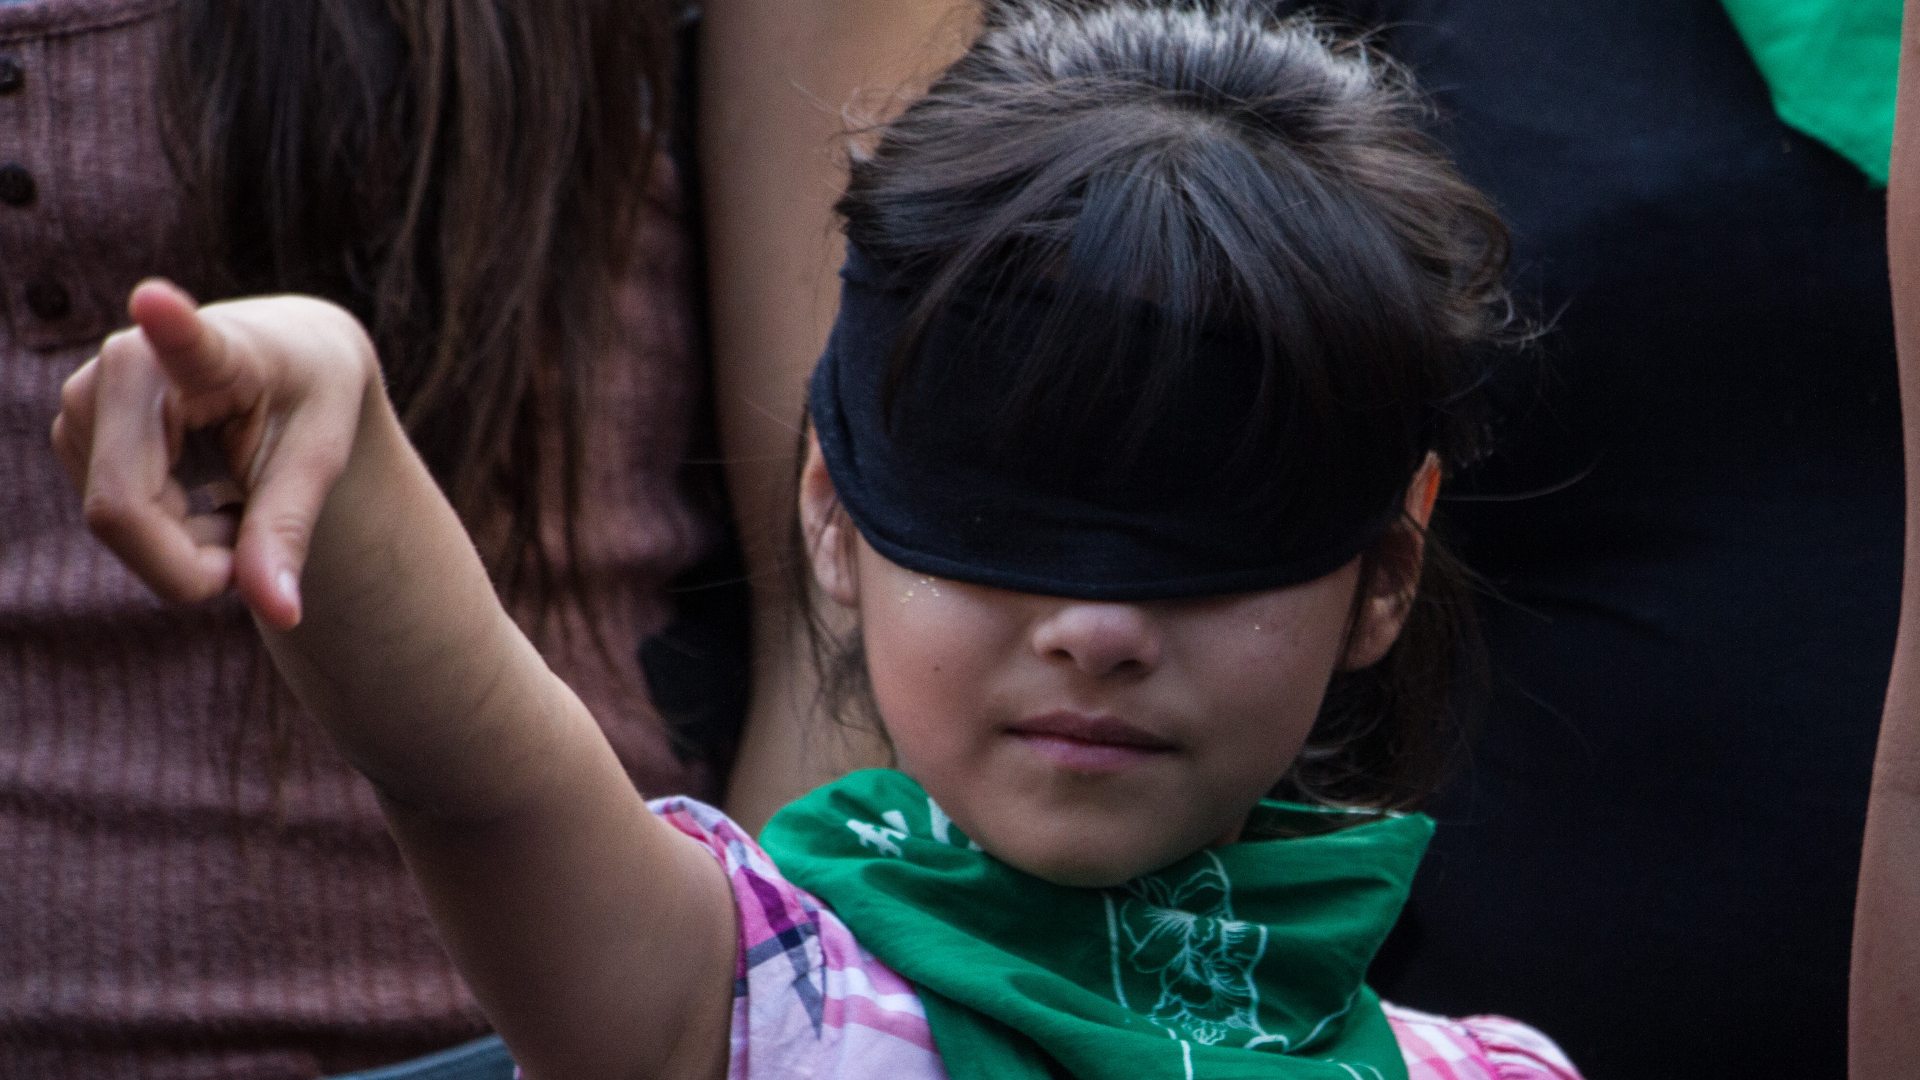 El ministro presidente aseguró que el feminicidio no está bien conceptualizado en México (Foto: ANDREA MURCIA /CUARTOSCURO.COM)